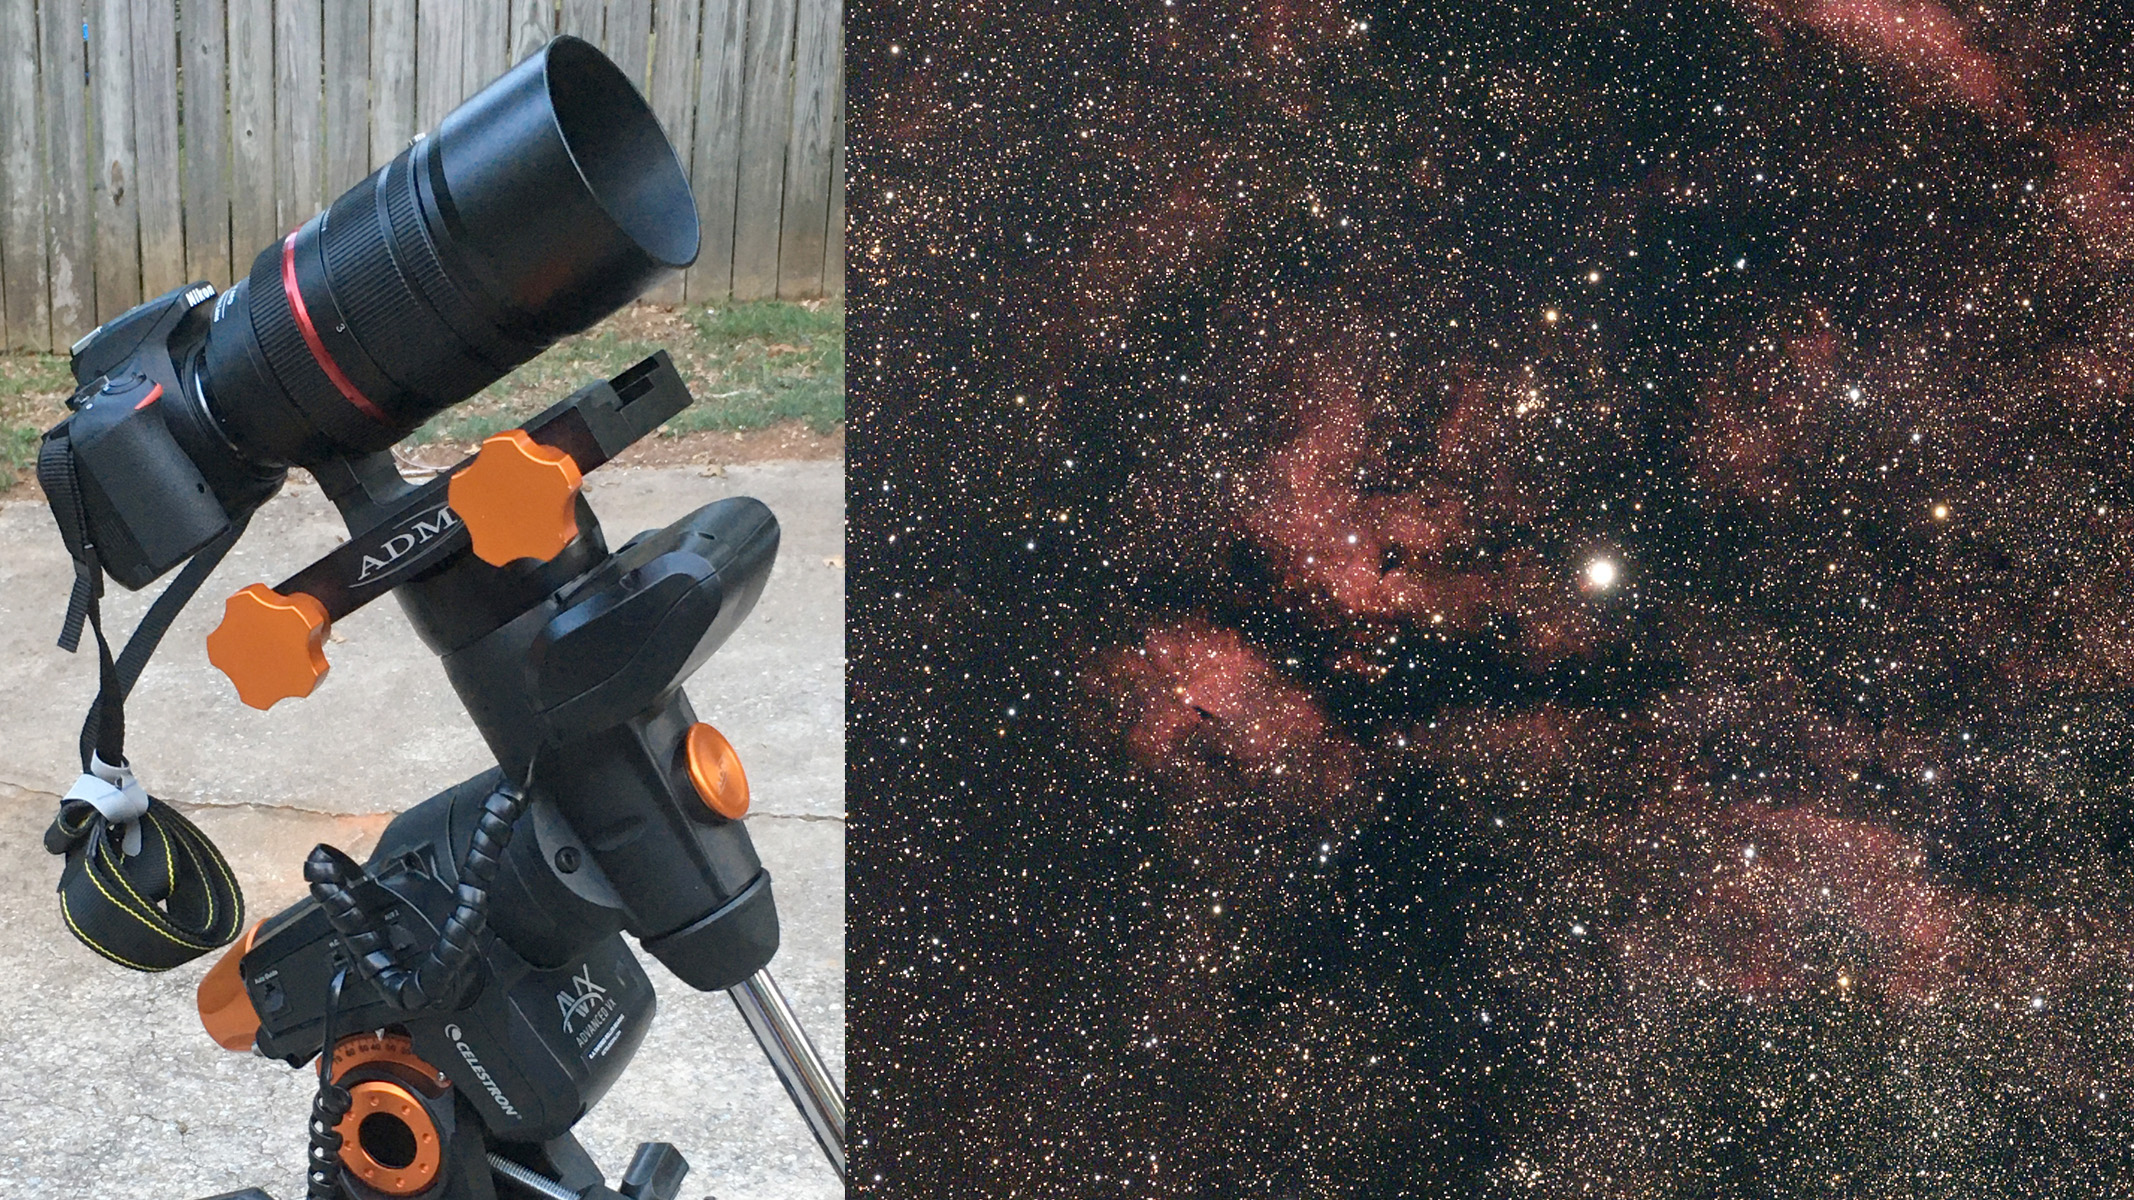 Snímek mlhoviny složený vedle nastavení dalekohledu